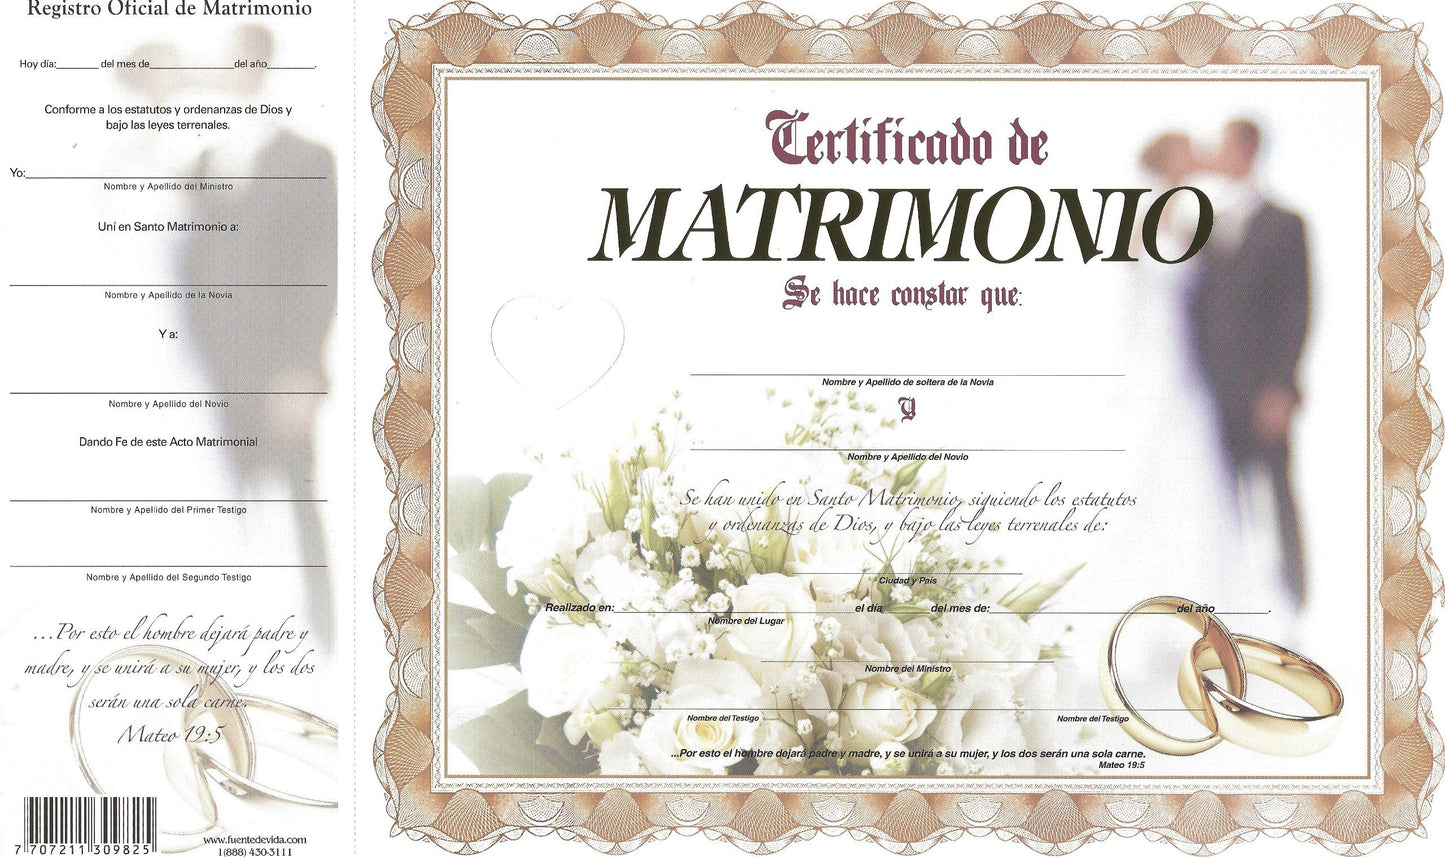 Marriage certificate (ECU) Certificado de Matrimonio